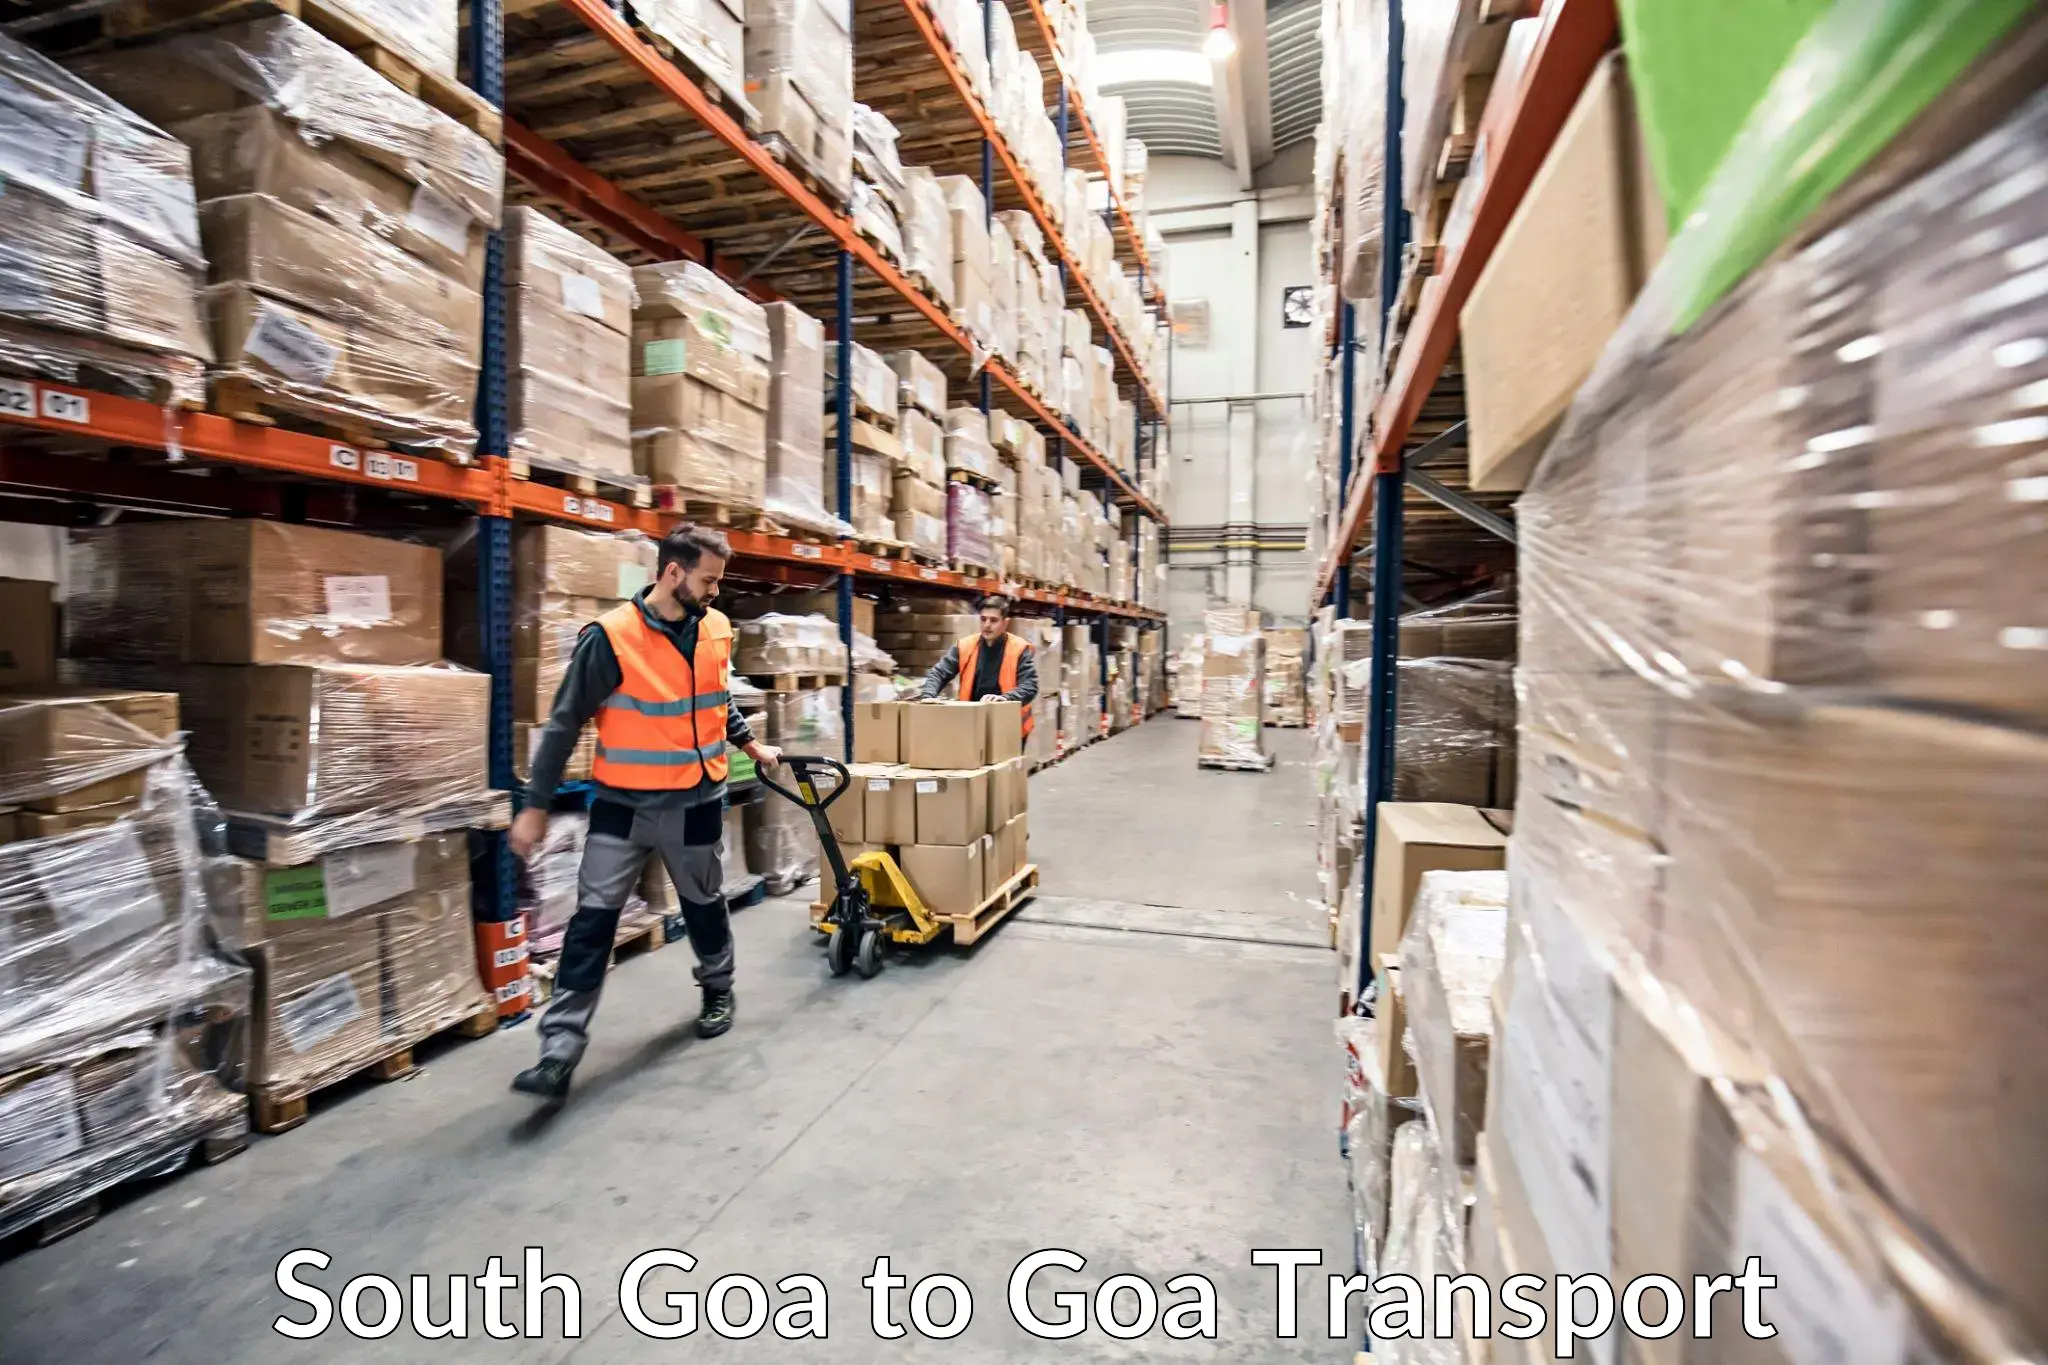 Daily parcel service transport South Goa to Vasco da Gama